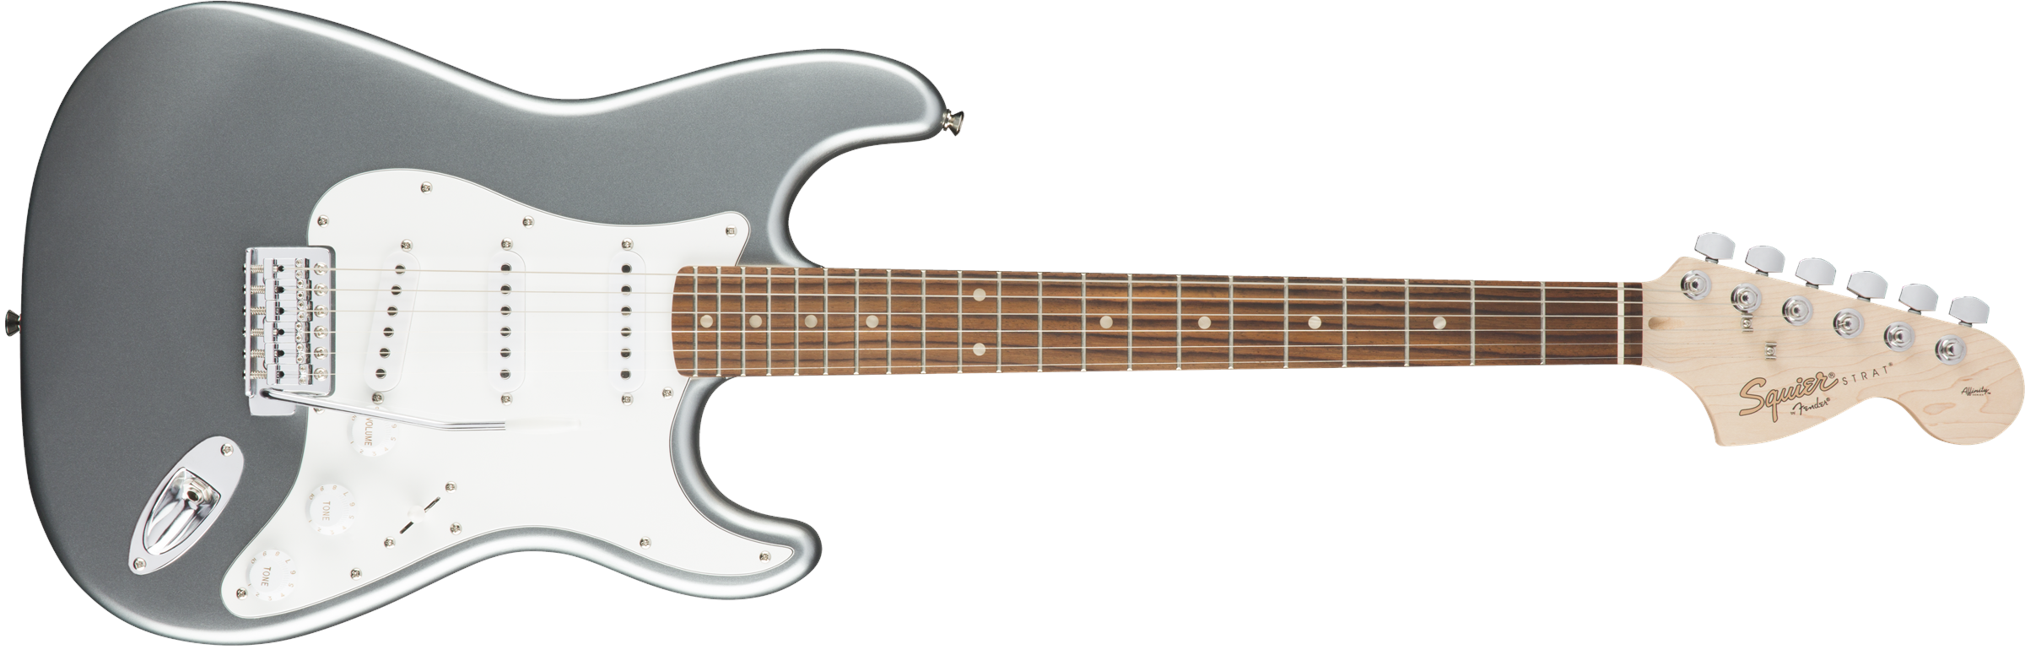 Squier By Fender - Affinity Stratocaster - Elektrisk Guitar (Slick Silver)